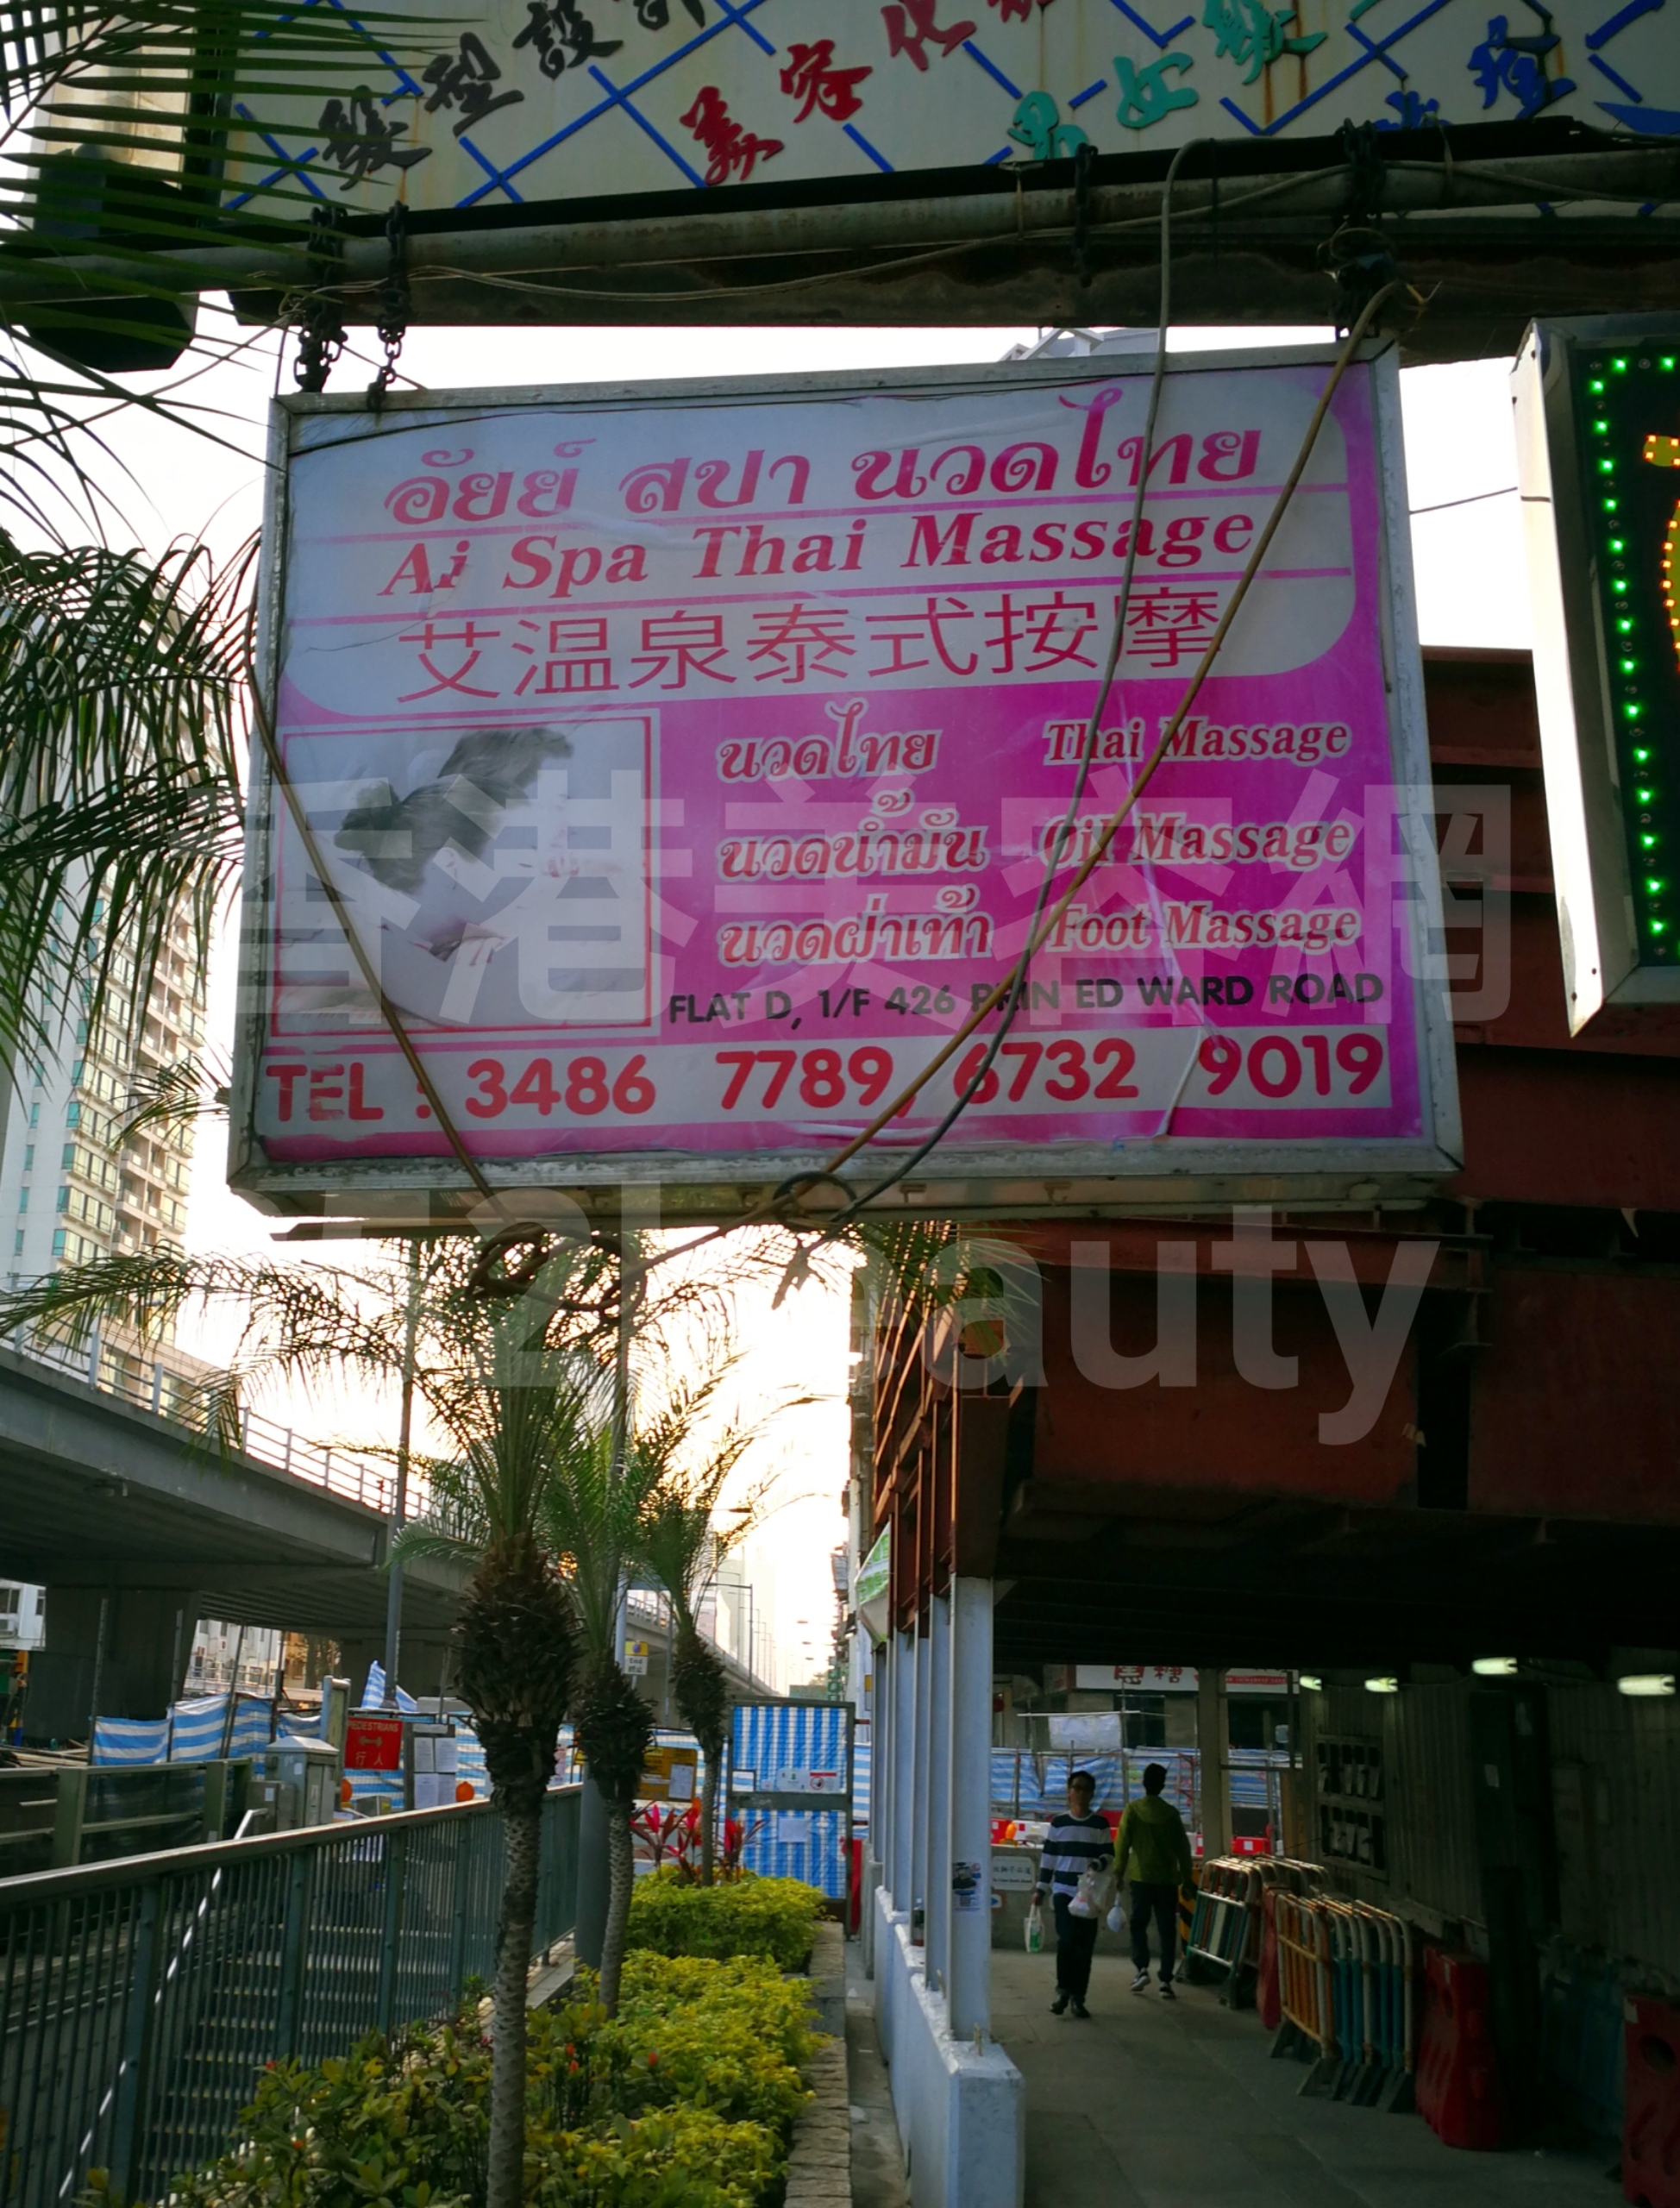 香港美容網 Hong Kong Beauty Salon 美容院 / 美容師: 艾溫泉泰式按摩